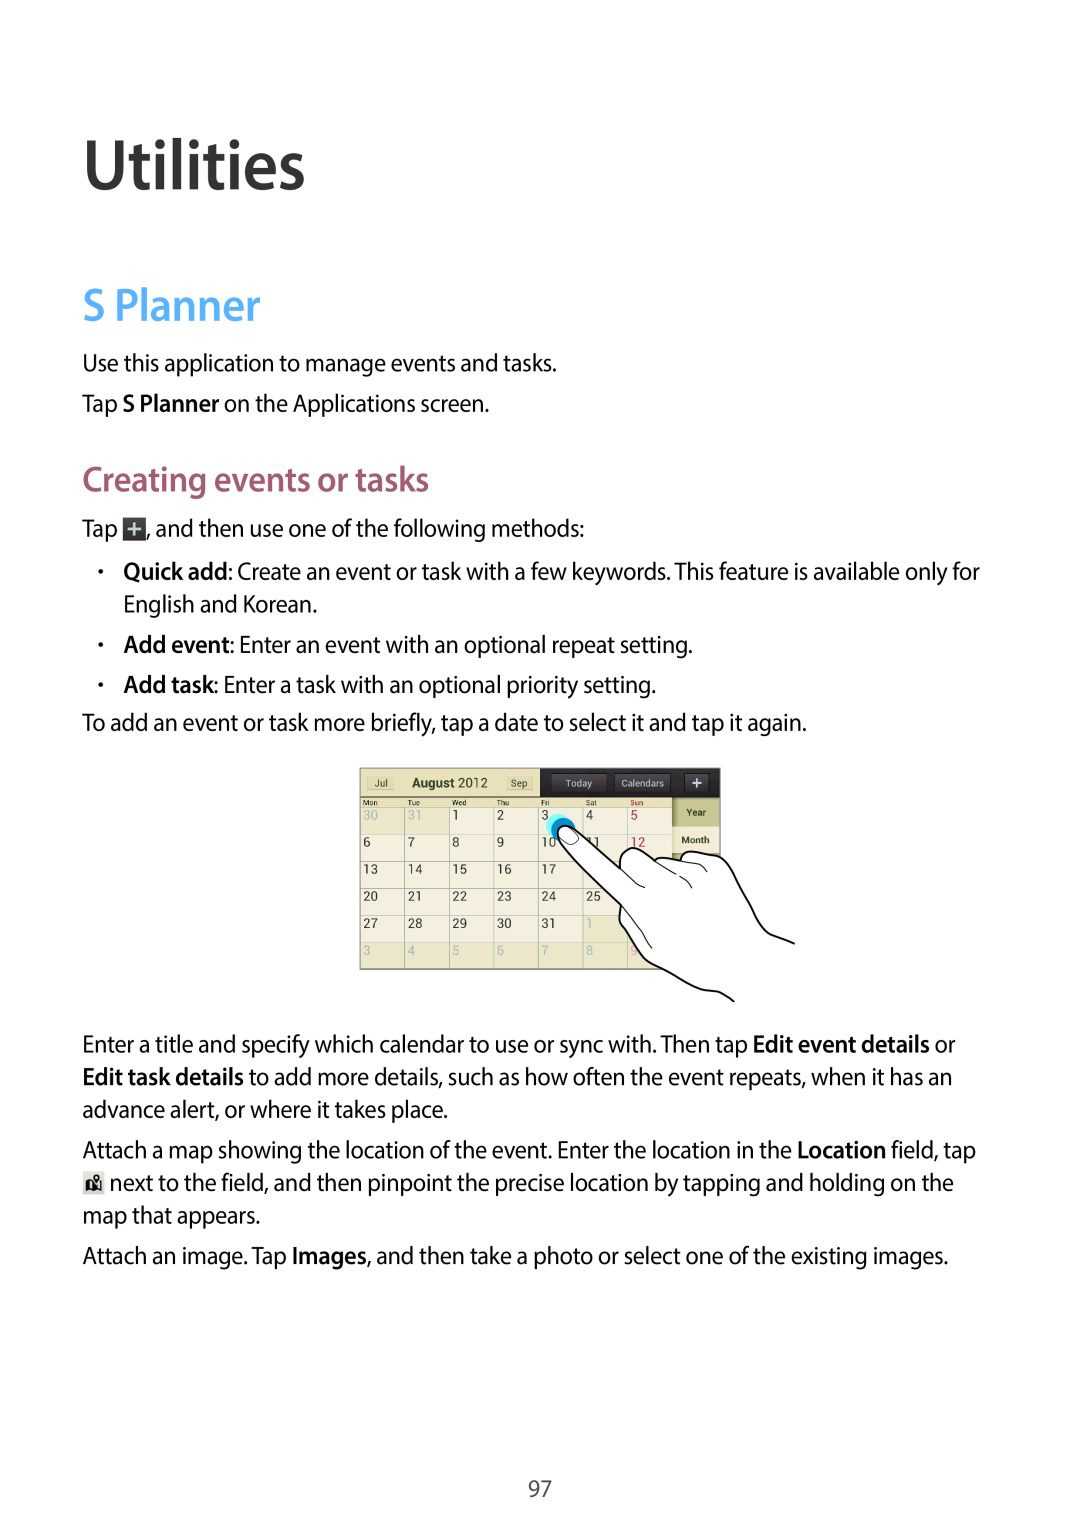 Samsung EK-GC100 user manual Utilities, S Planner, Creating events or tasks 